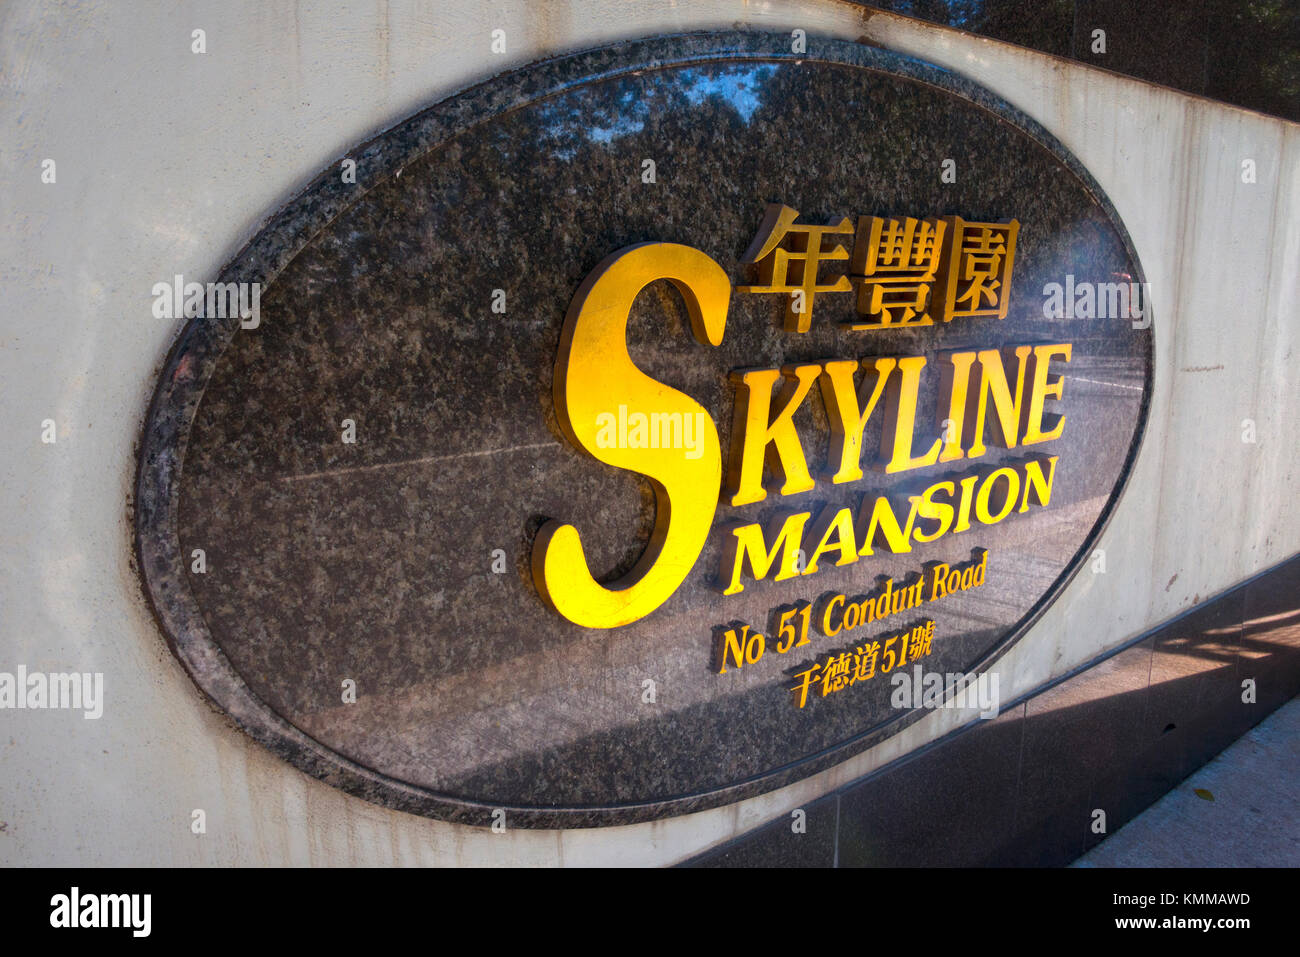 Skyline Mansion Eingangsschild, Kabelkanal Road, Hong Kong Stockfoto